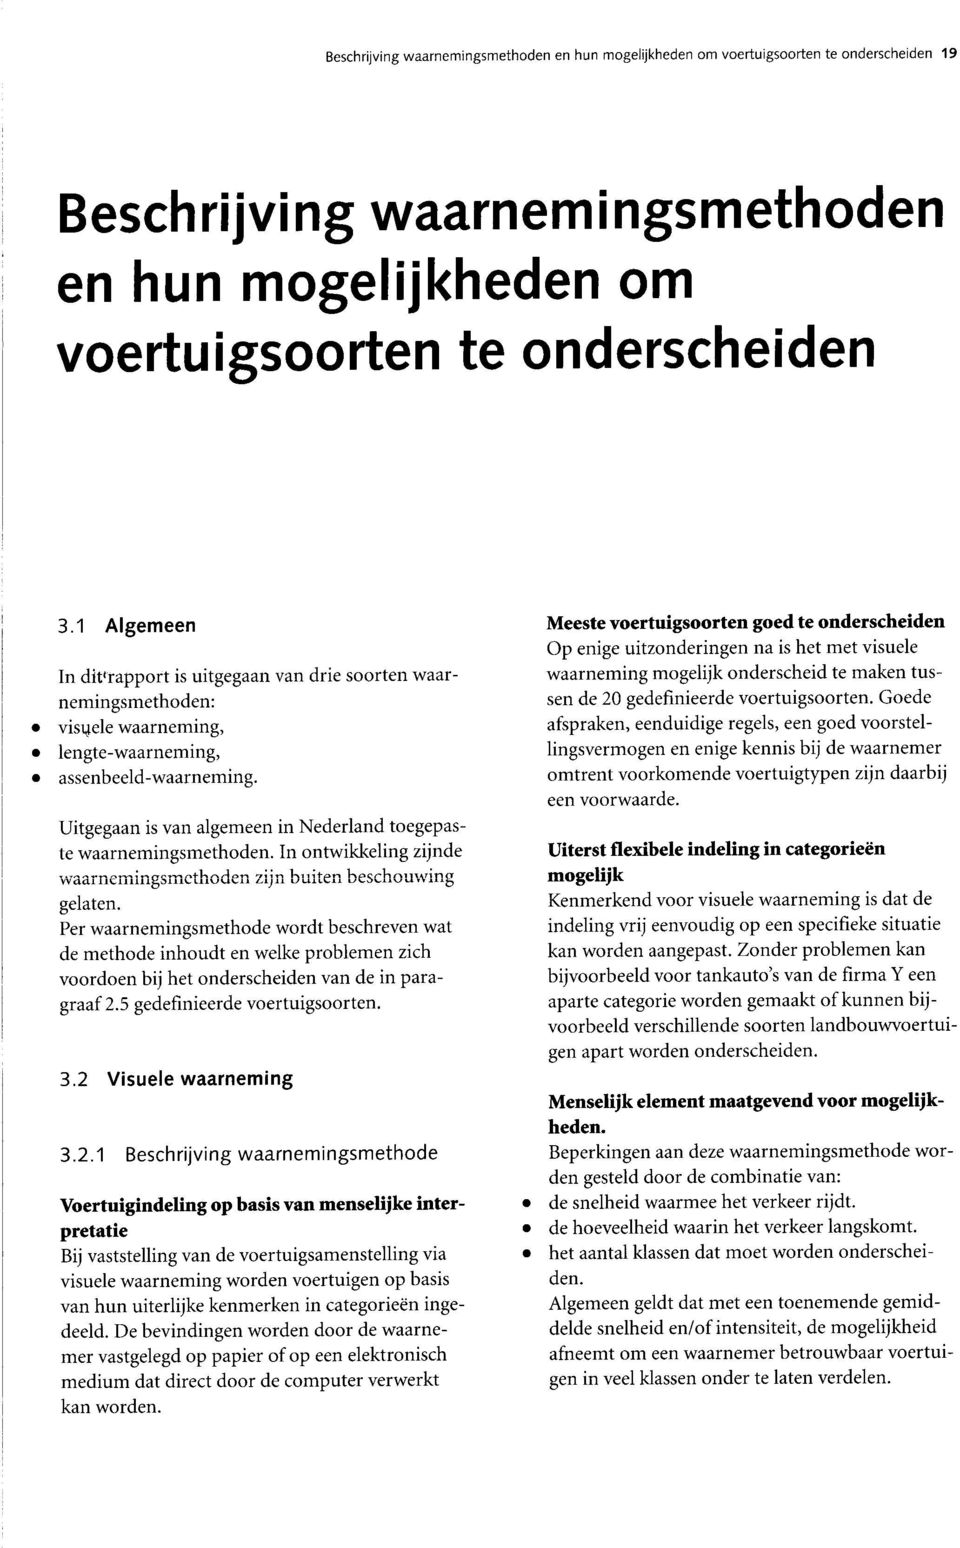 Uitgegaan is van algemeen in Nederland toegepaste waarnemingsmethoden. In ontwikkeling zijnde waarnemingsmethoden zijn buiten beschouwing gelaten.